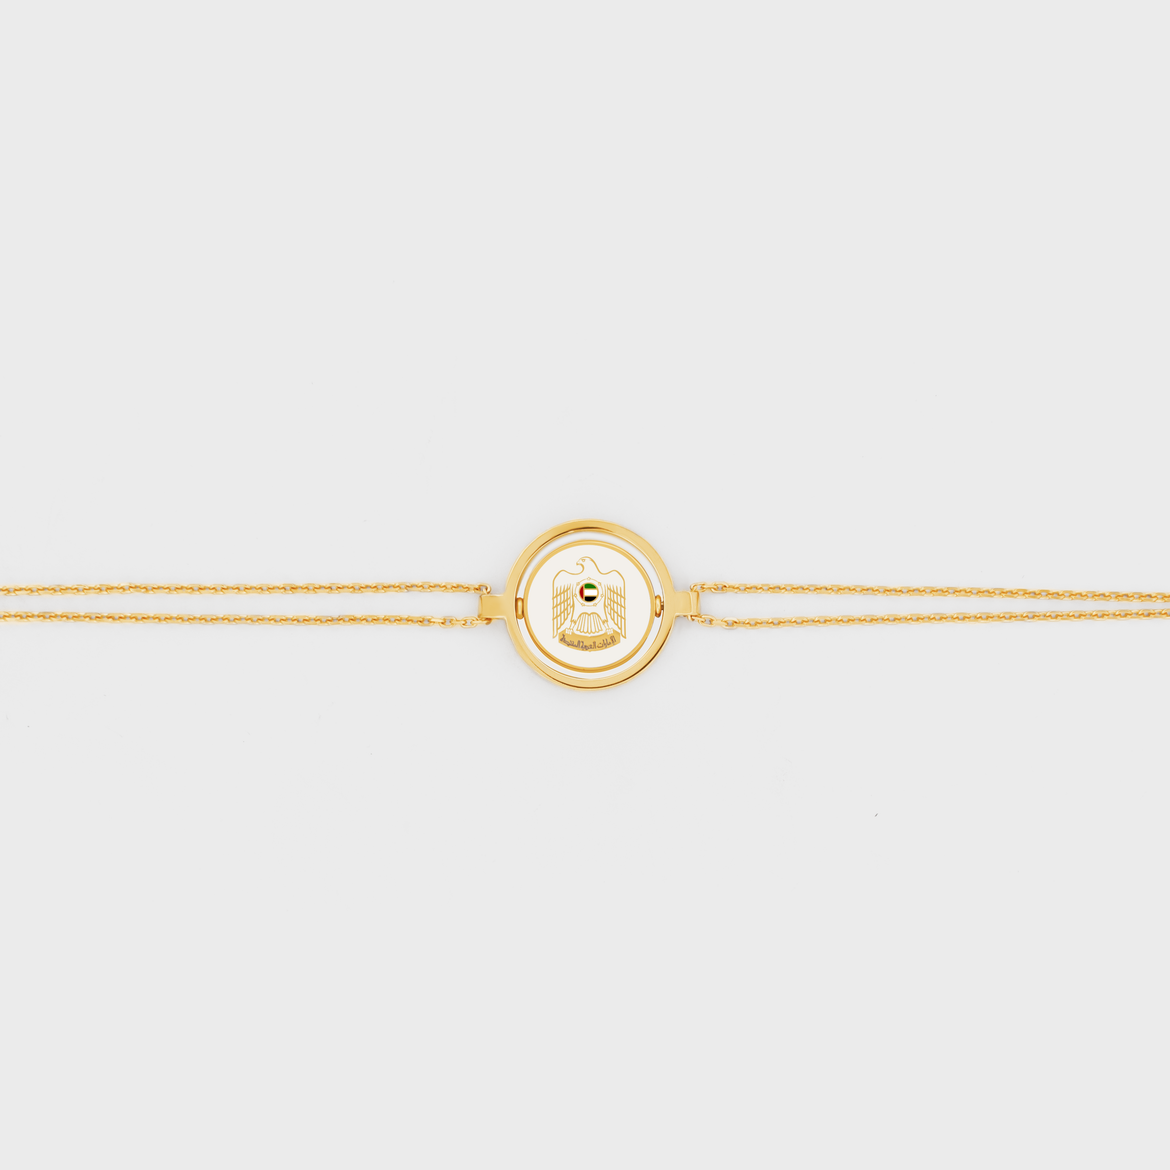 UAE Emblem Bracelet in 18k Gold